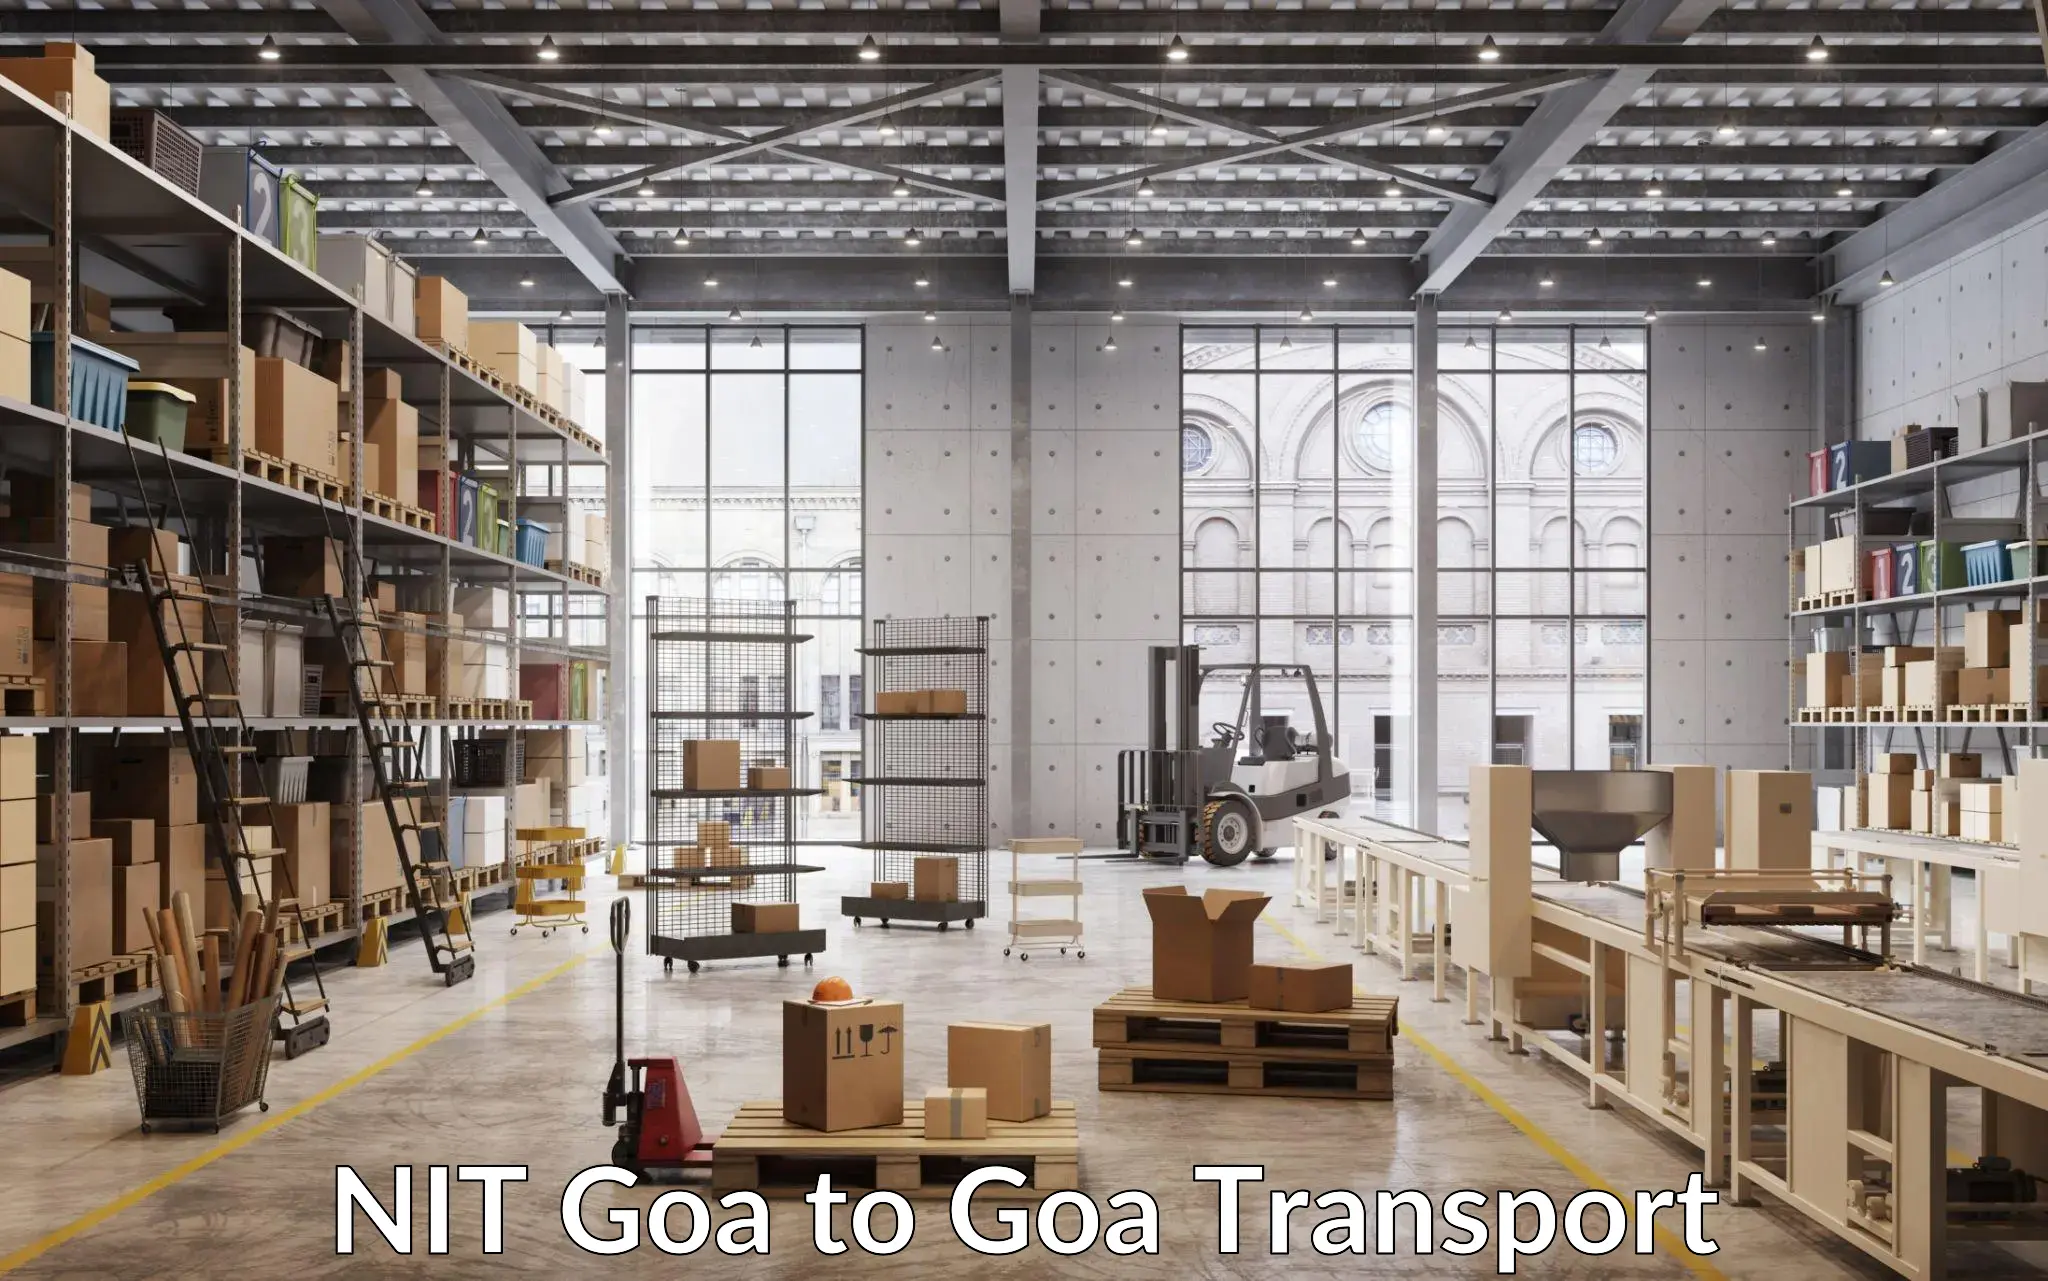 Land transport services NIT Goa to Goa